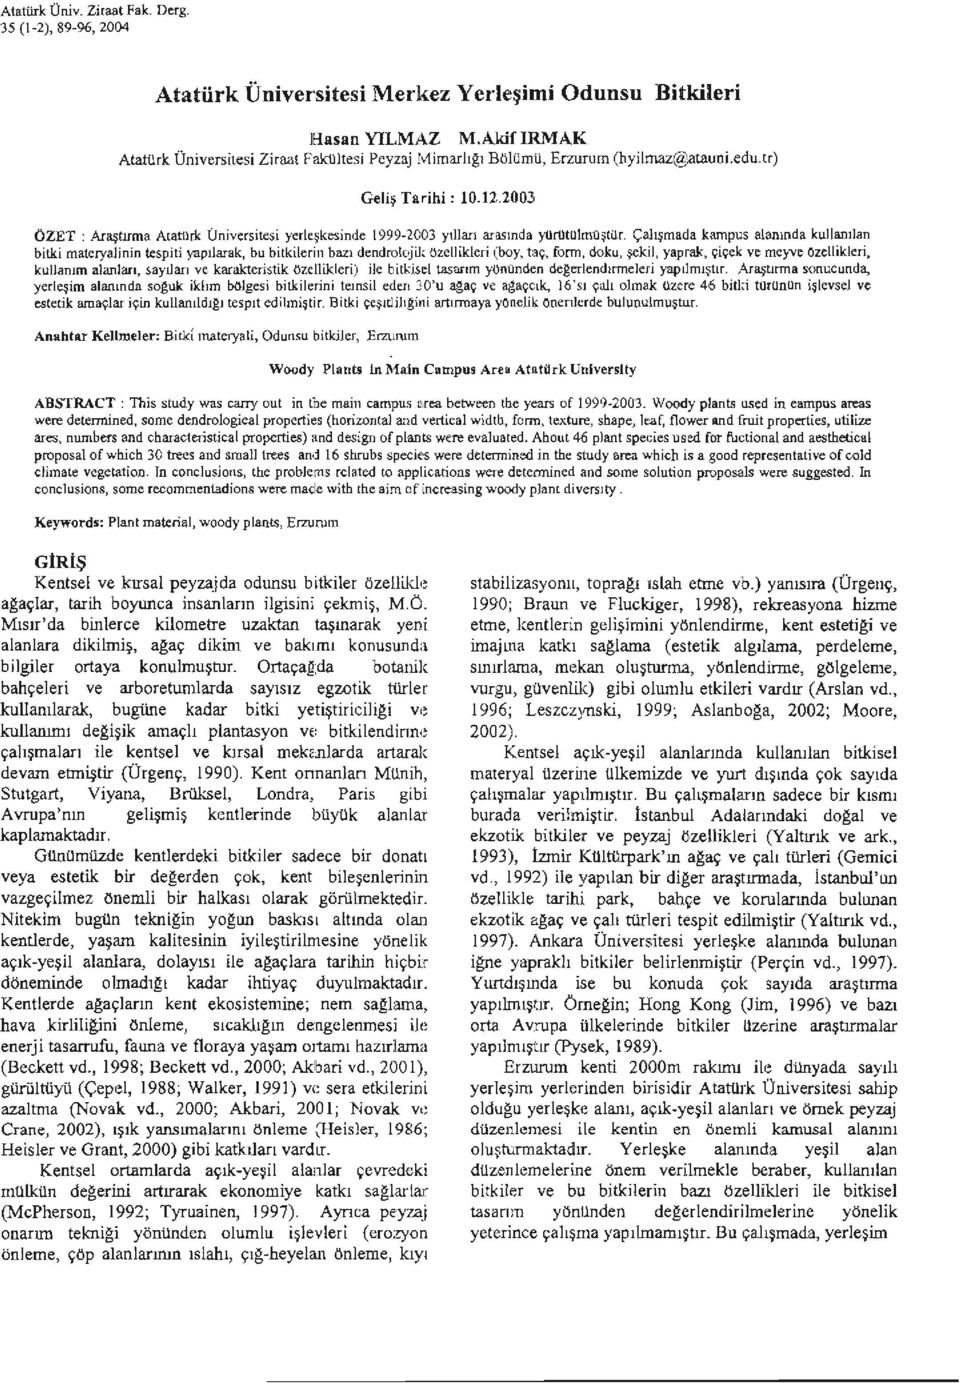 .2003 ÖZET: Araştırma Aıat1lrk Üniversitesi yerkşkesinde 1999 2003 yılları arasında yur1ltulmilşıür.